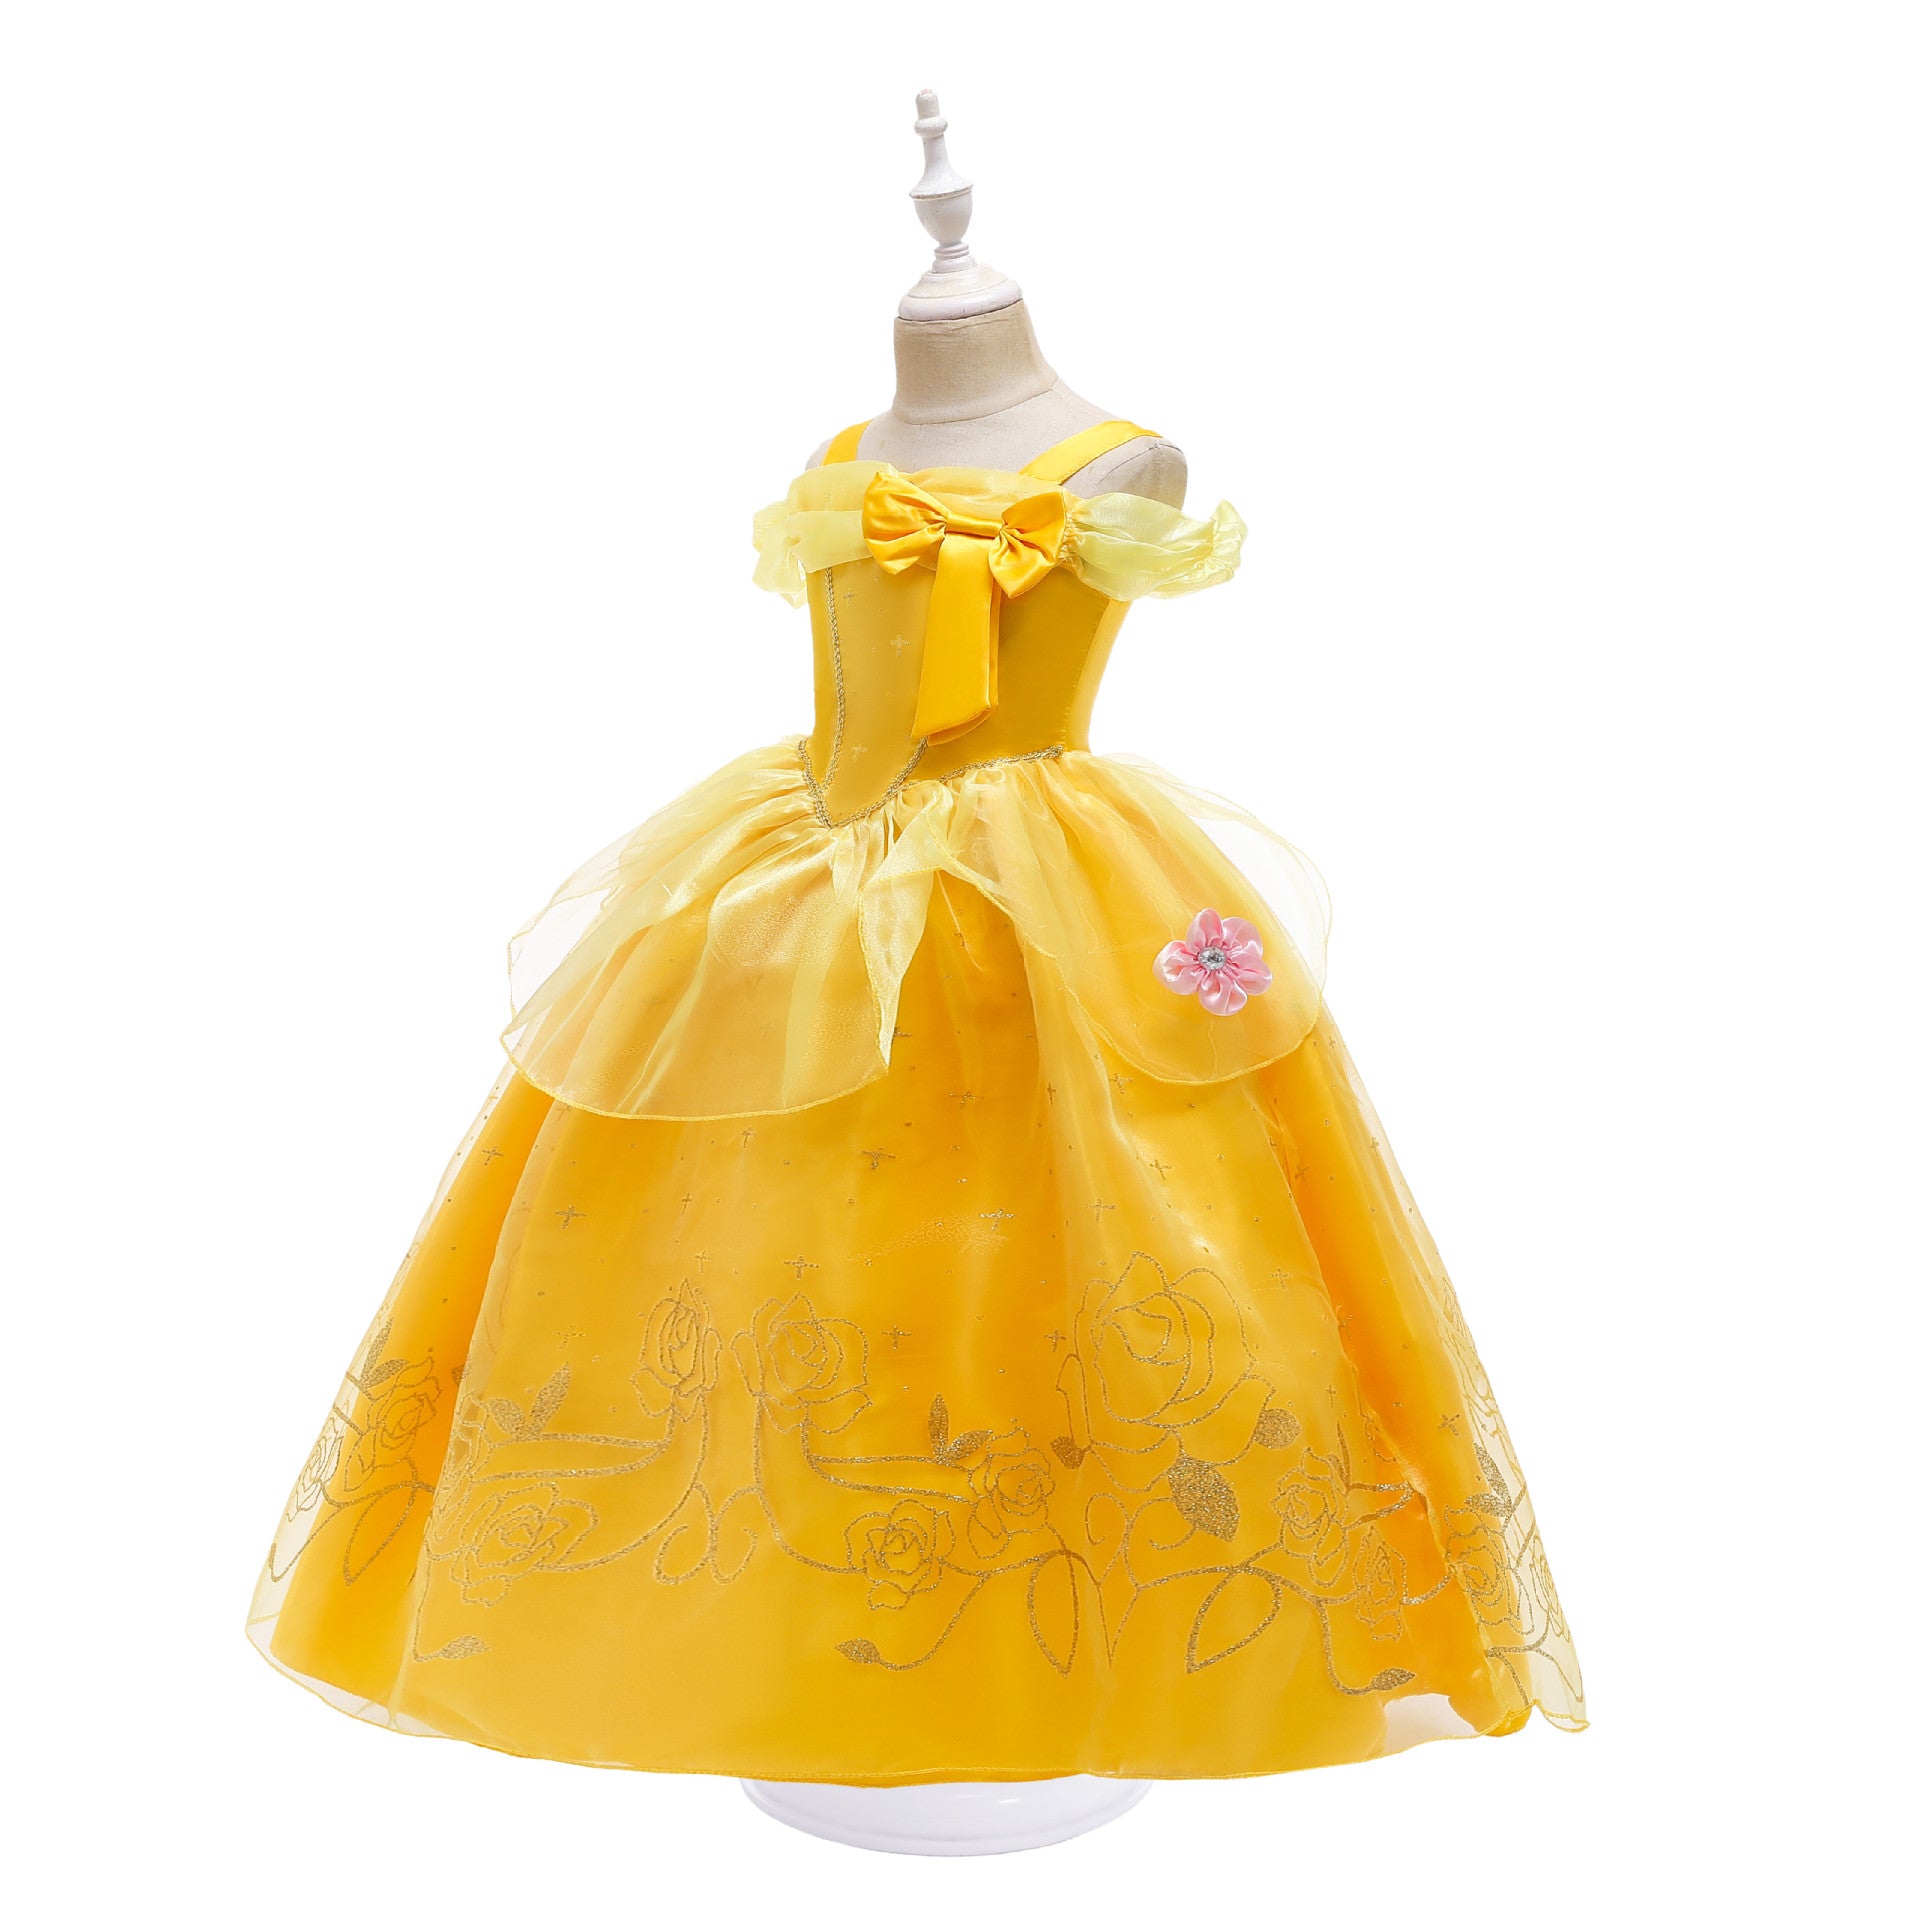 Bell Fairy Dress